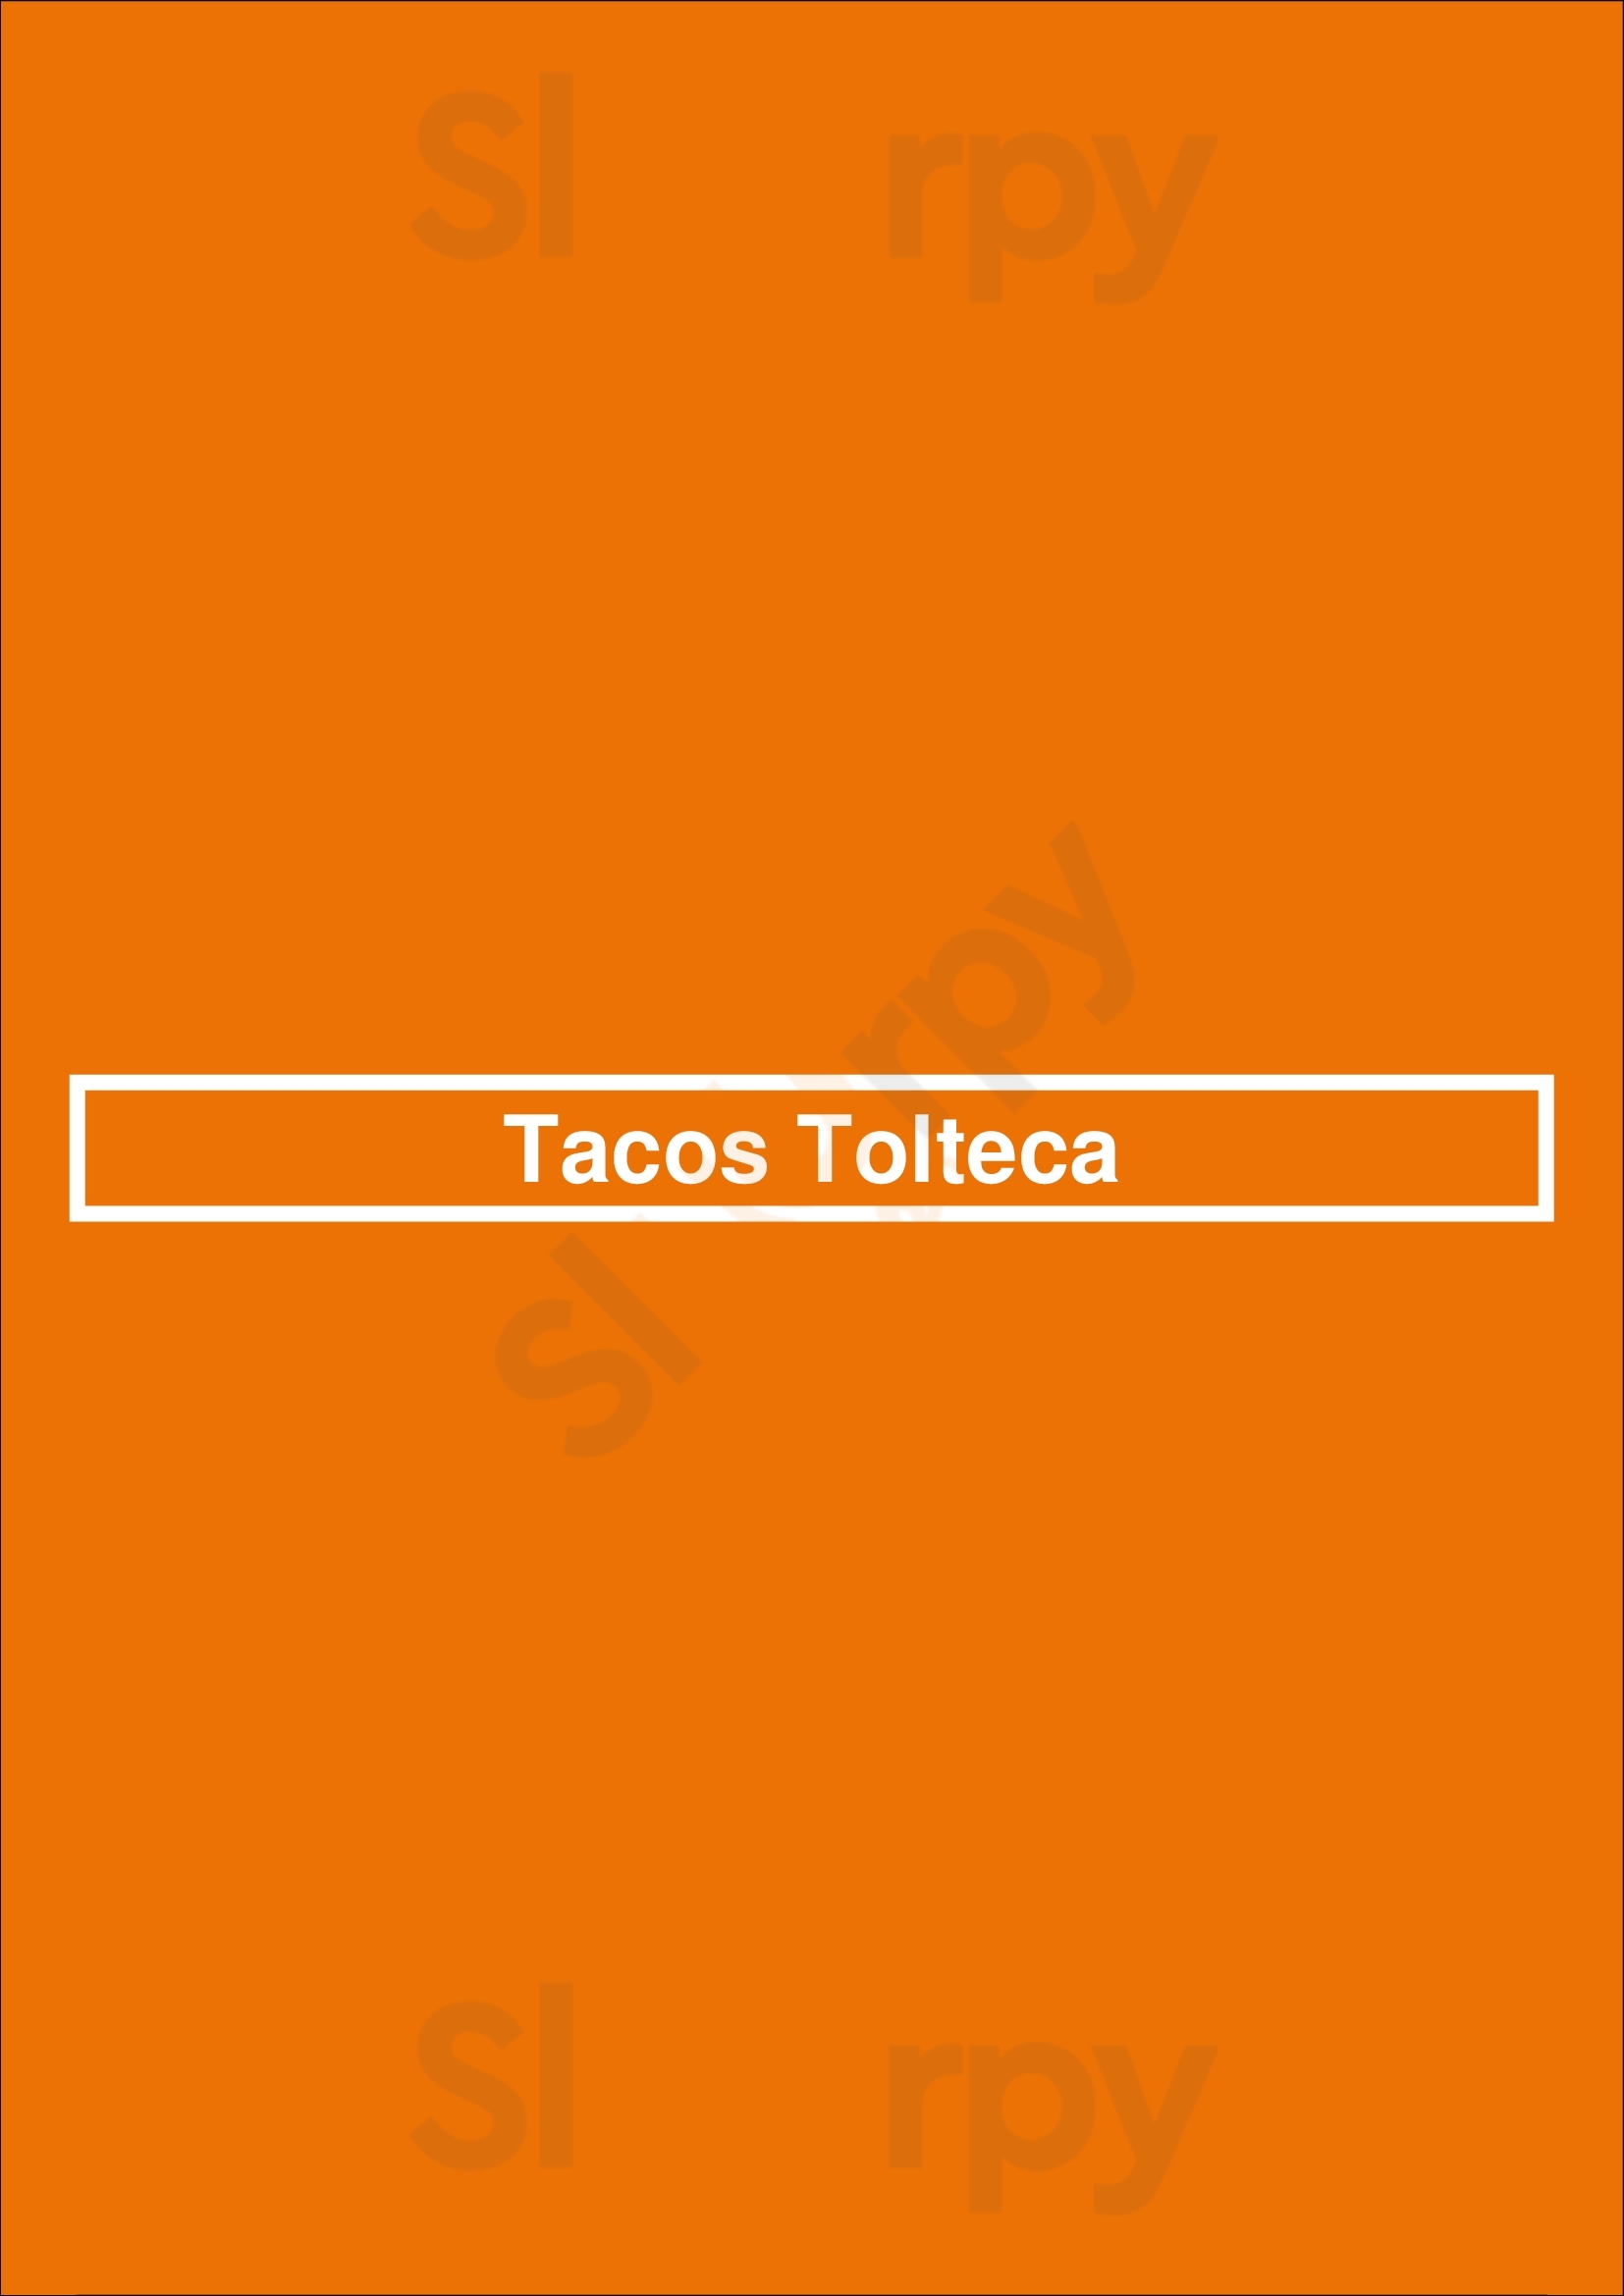 Tacos Tolteca Baltimore Menu - 1